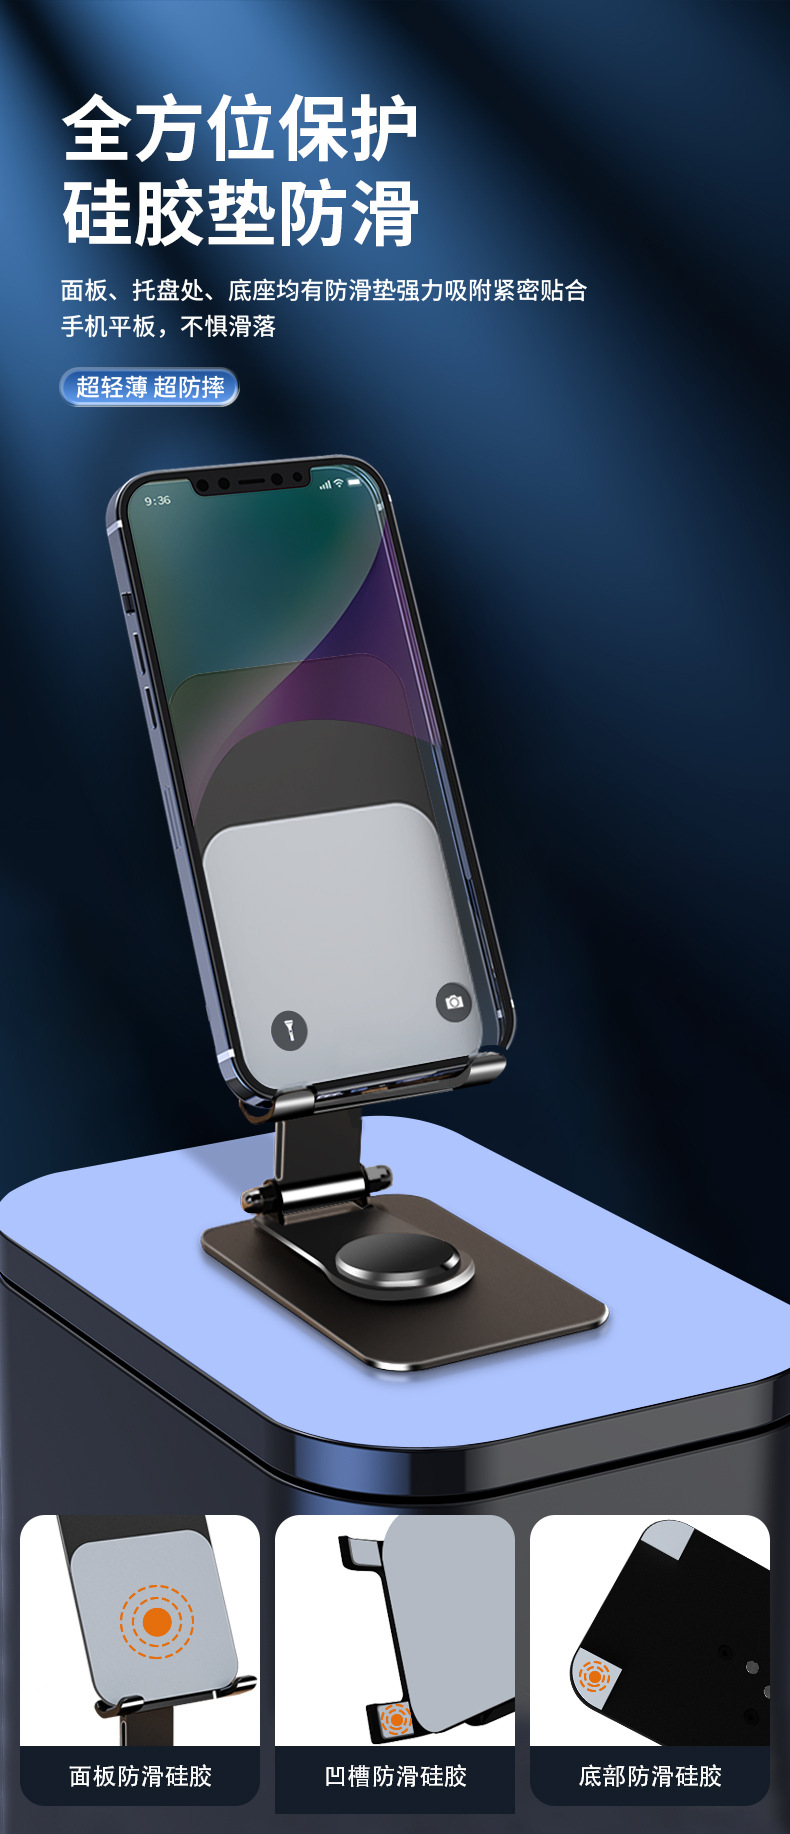 桌面金属平板手机支架360°旋转折叠可加印LOGO礼品手机支架批发